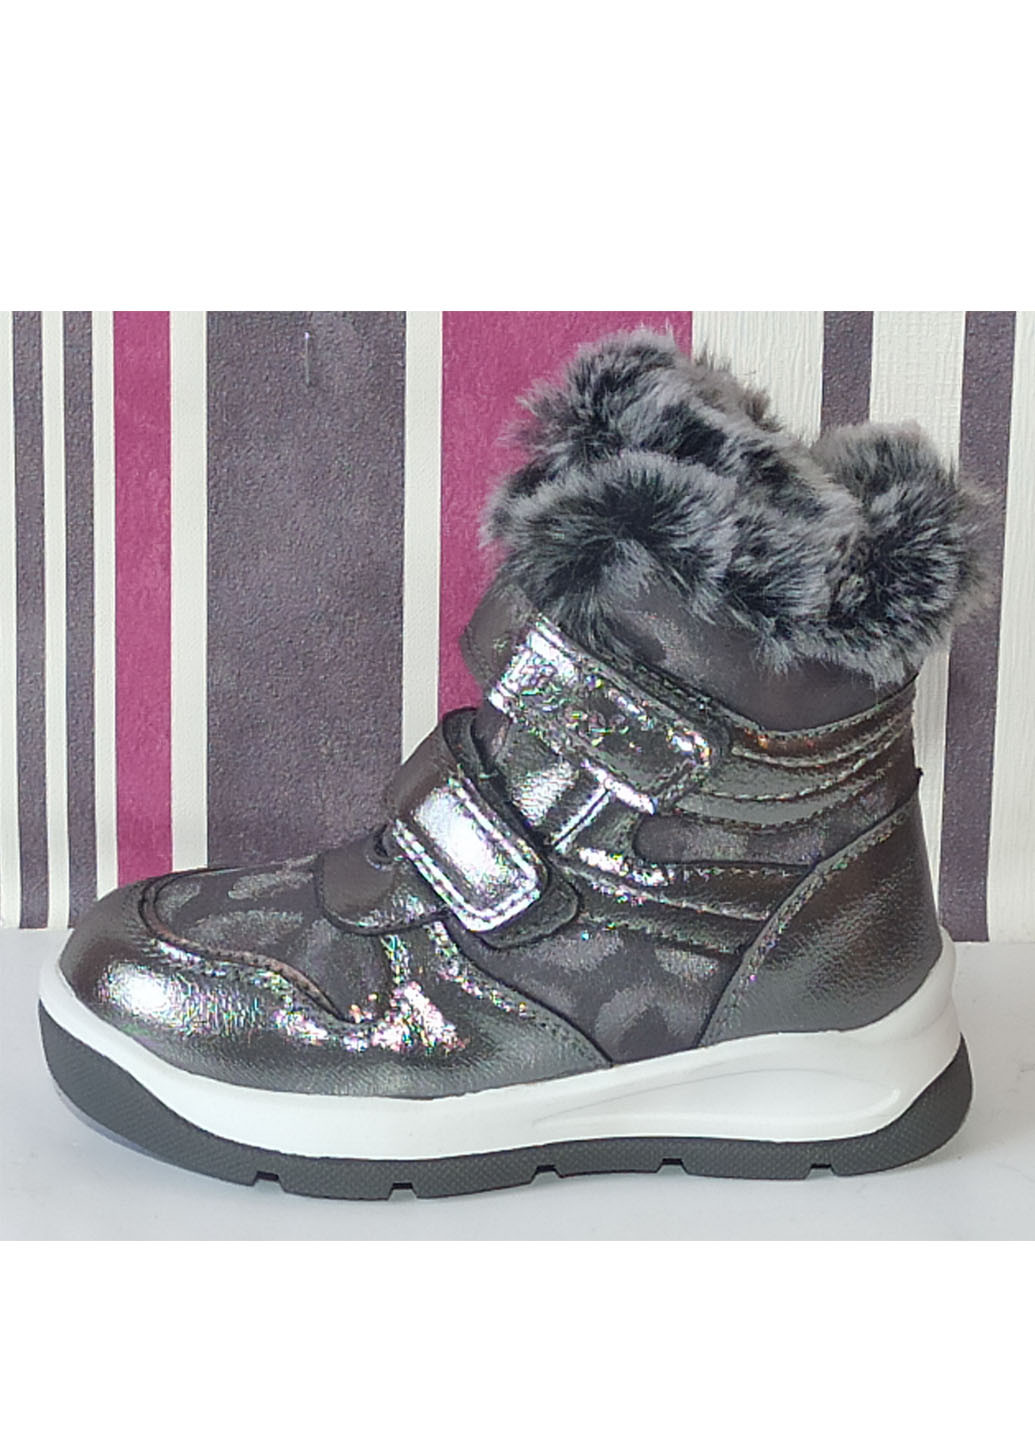 Серебряные повседневные зимние зимние ботинки для девочки на овчине н219 23-15,4см 24-15,9см Clibee